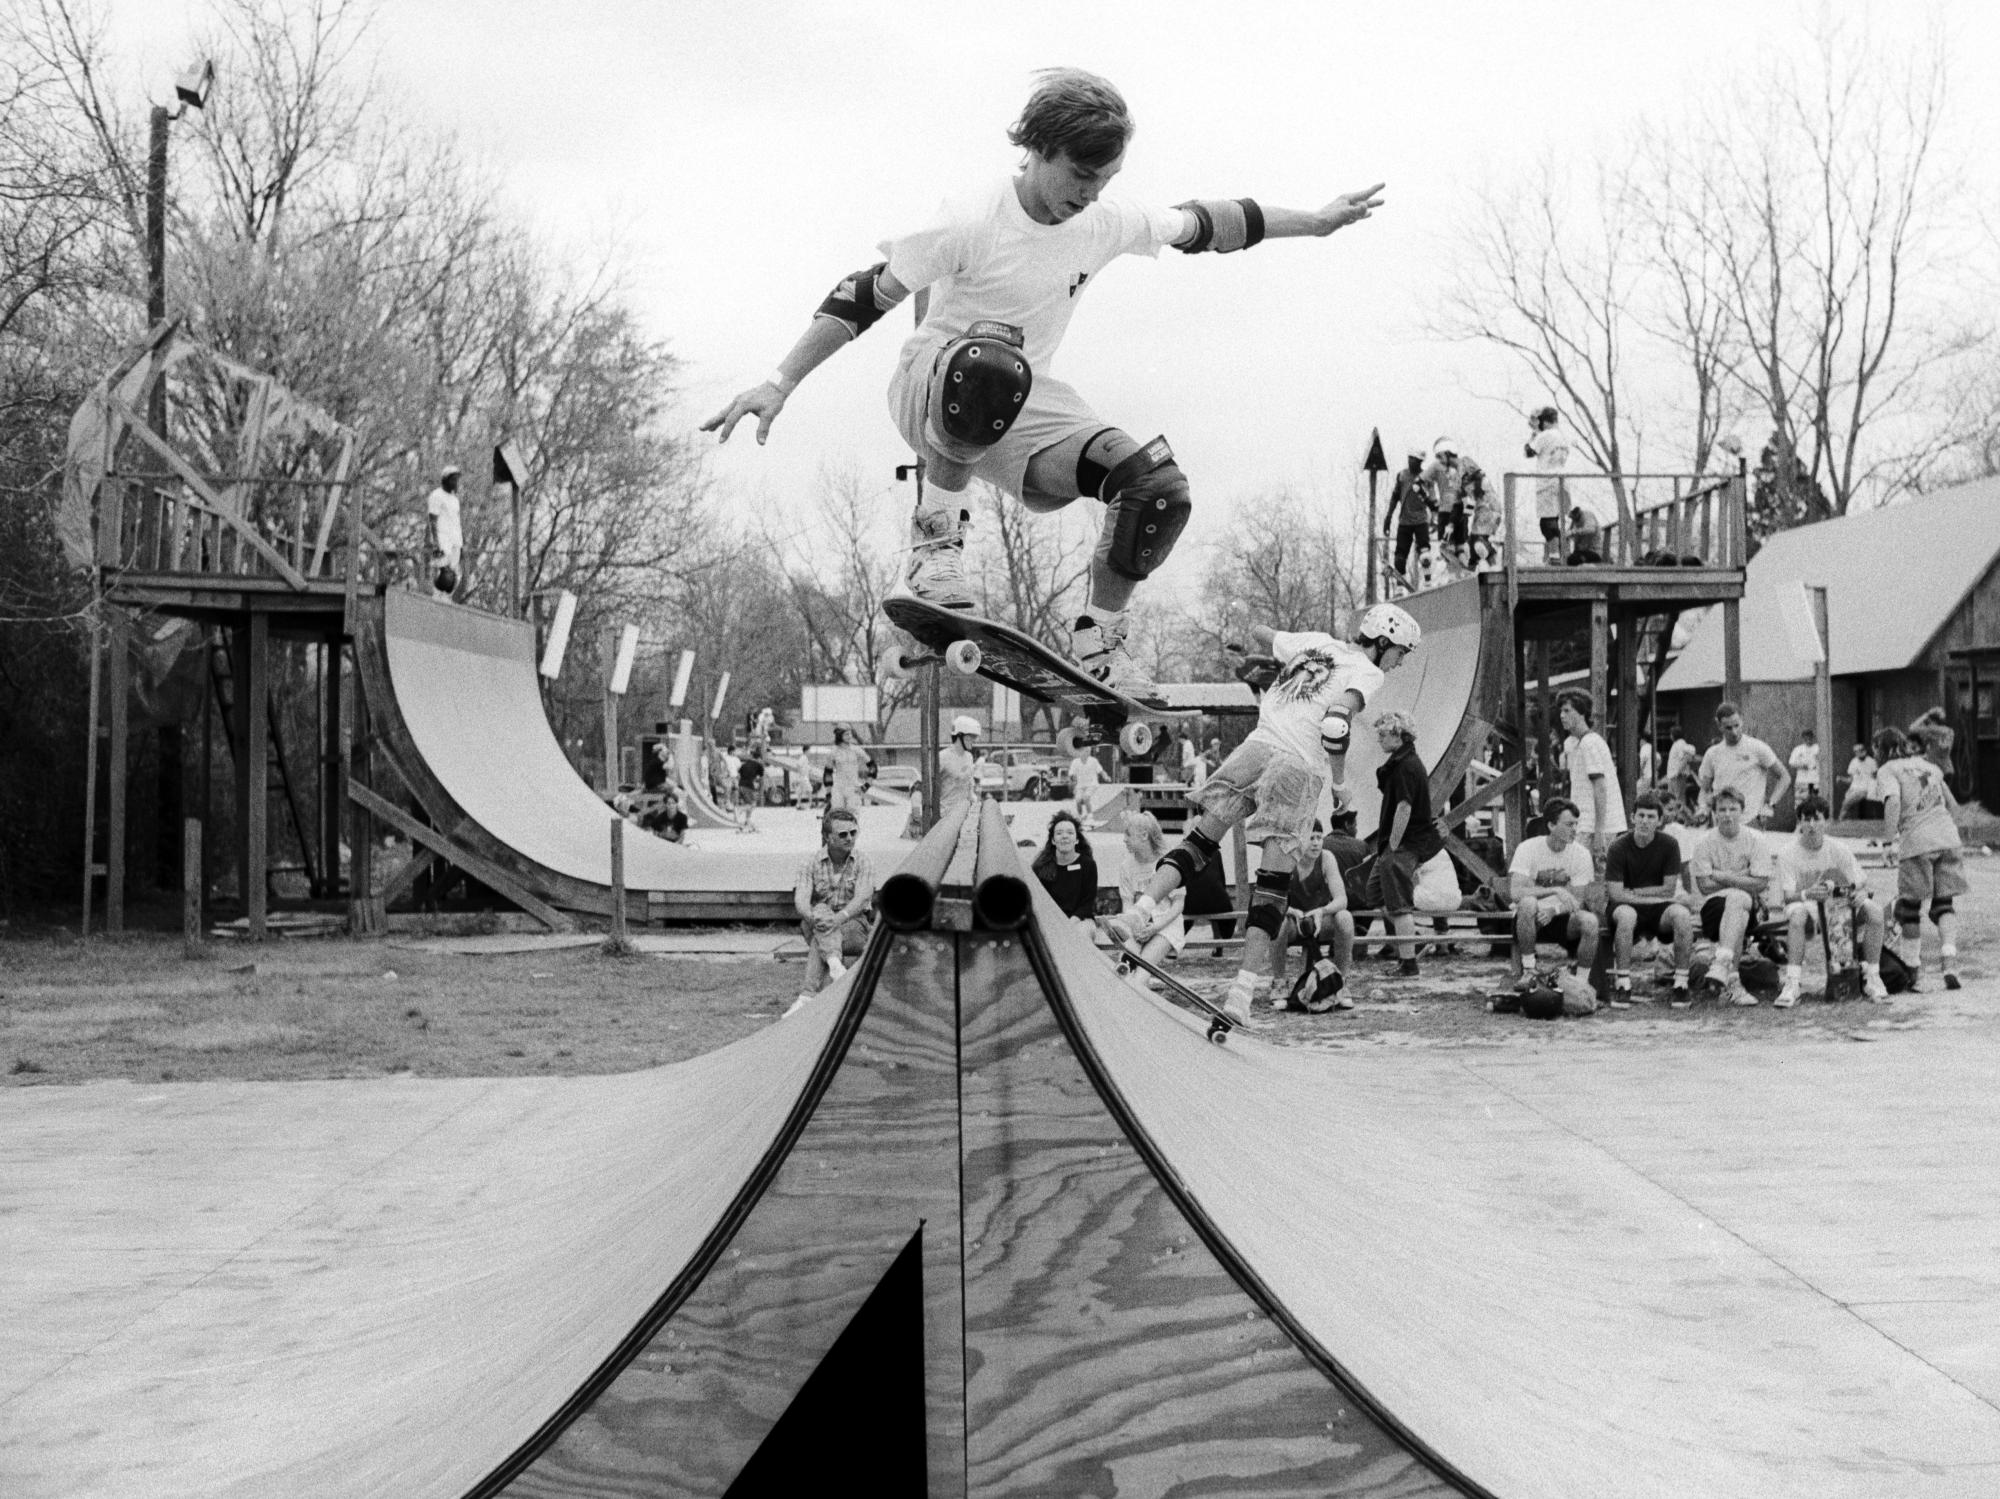 Skate Park (1989) - Skateboarding #20